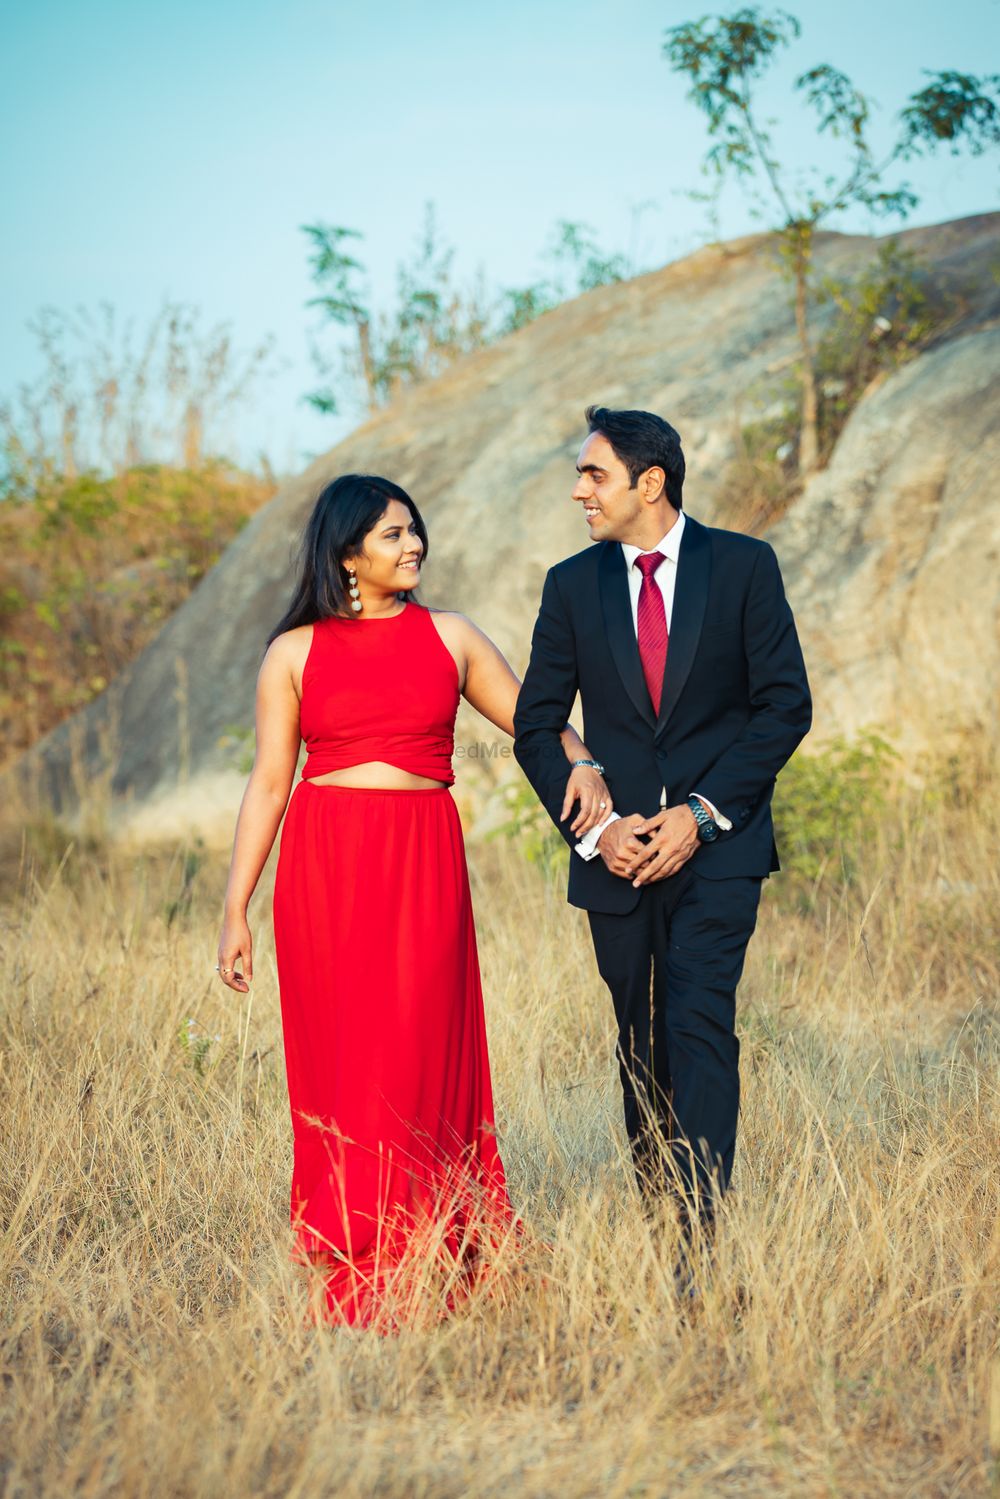 Photo From Abhishek & Priyanka - By Shutter Diaries 